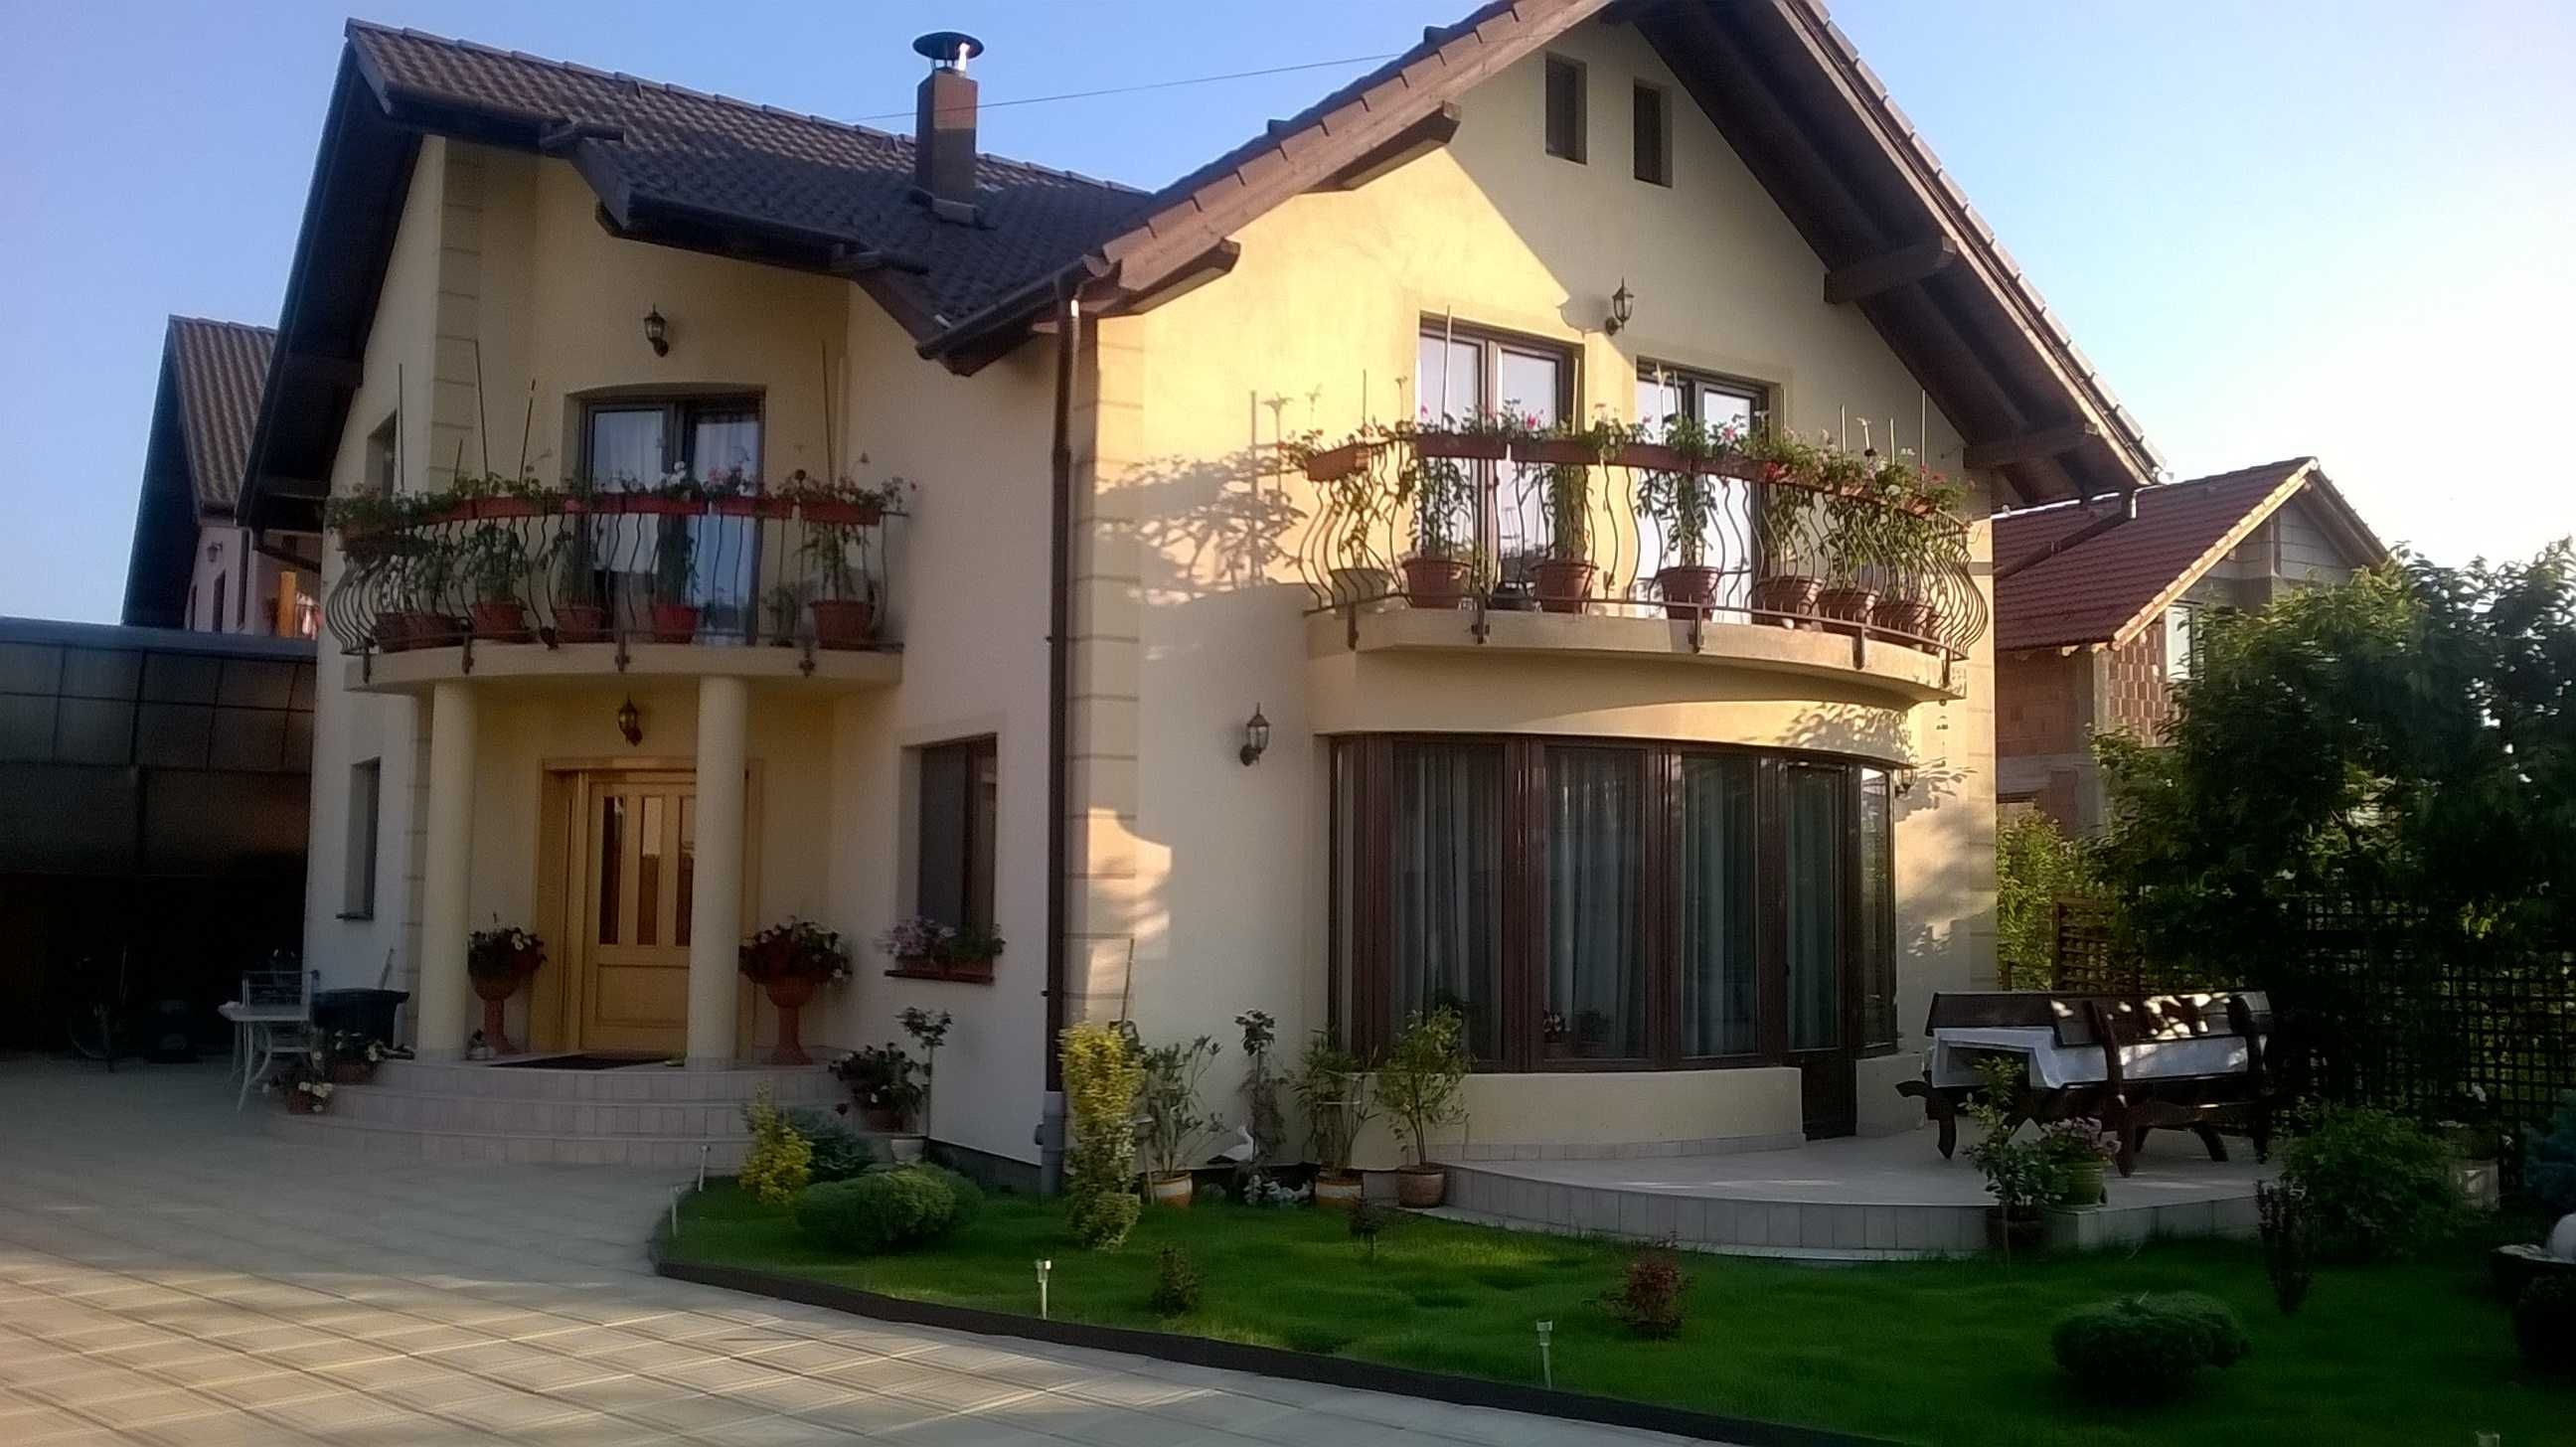 Vand casa singur in curte Sibiu